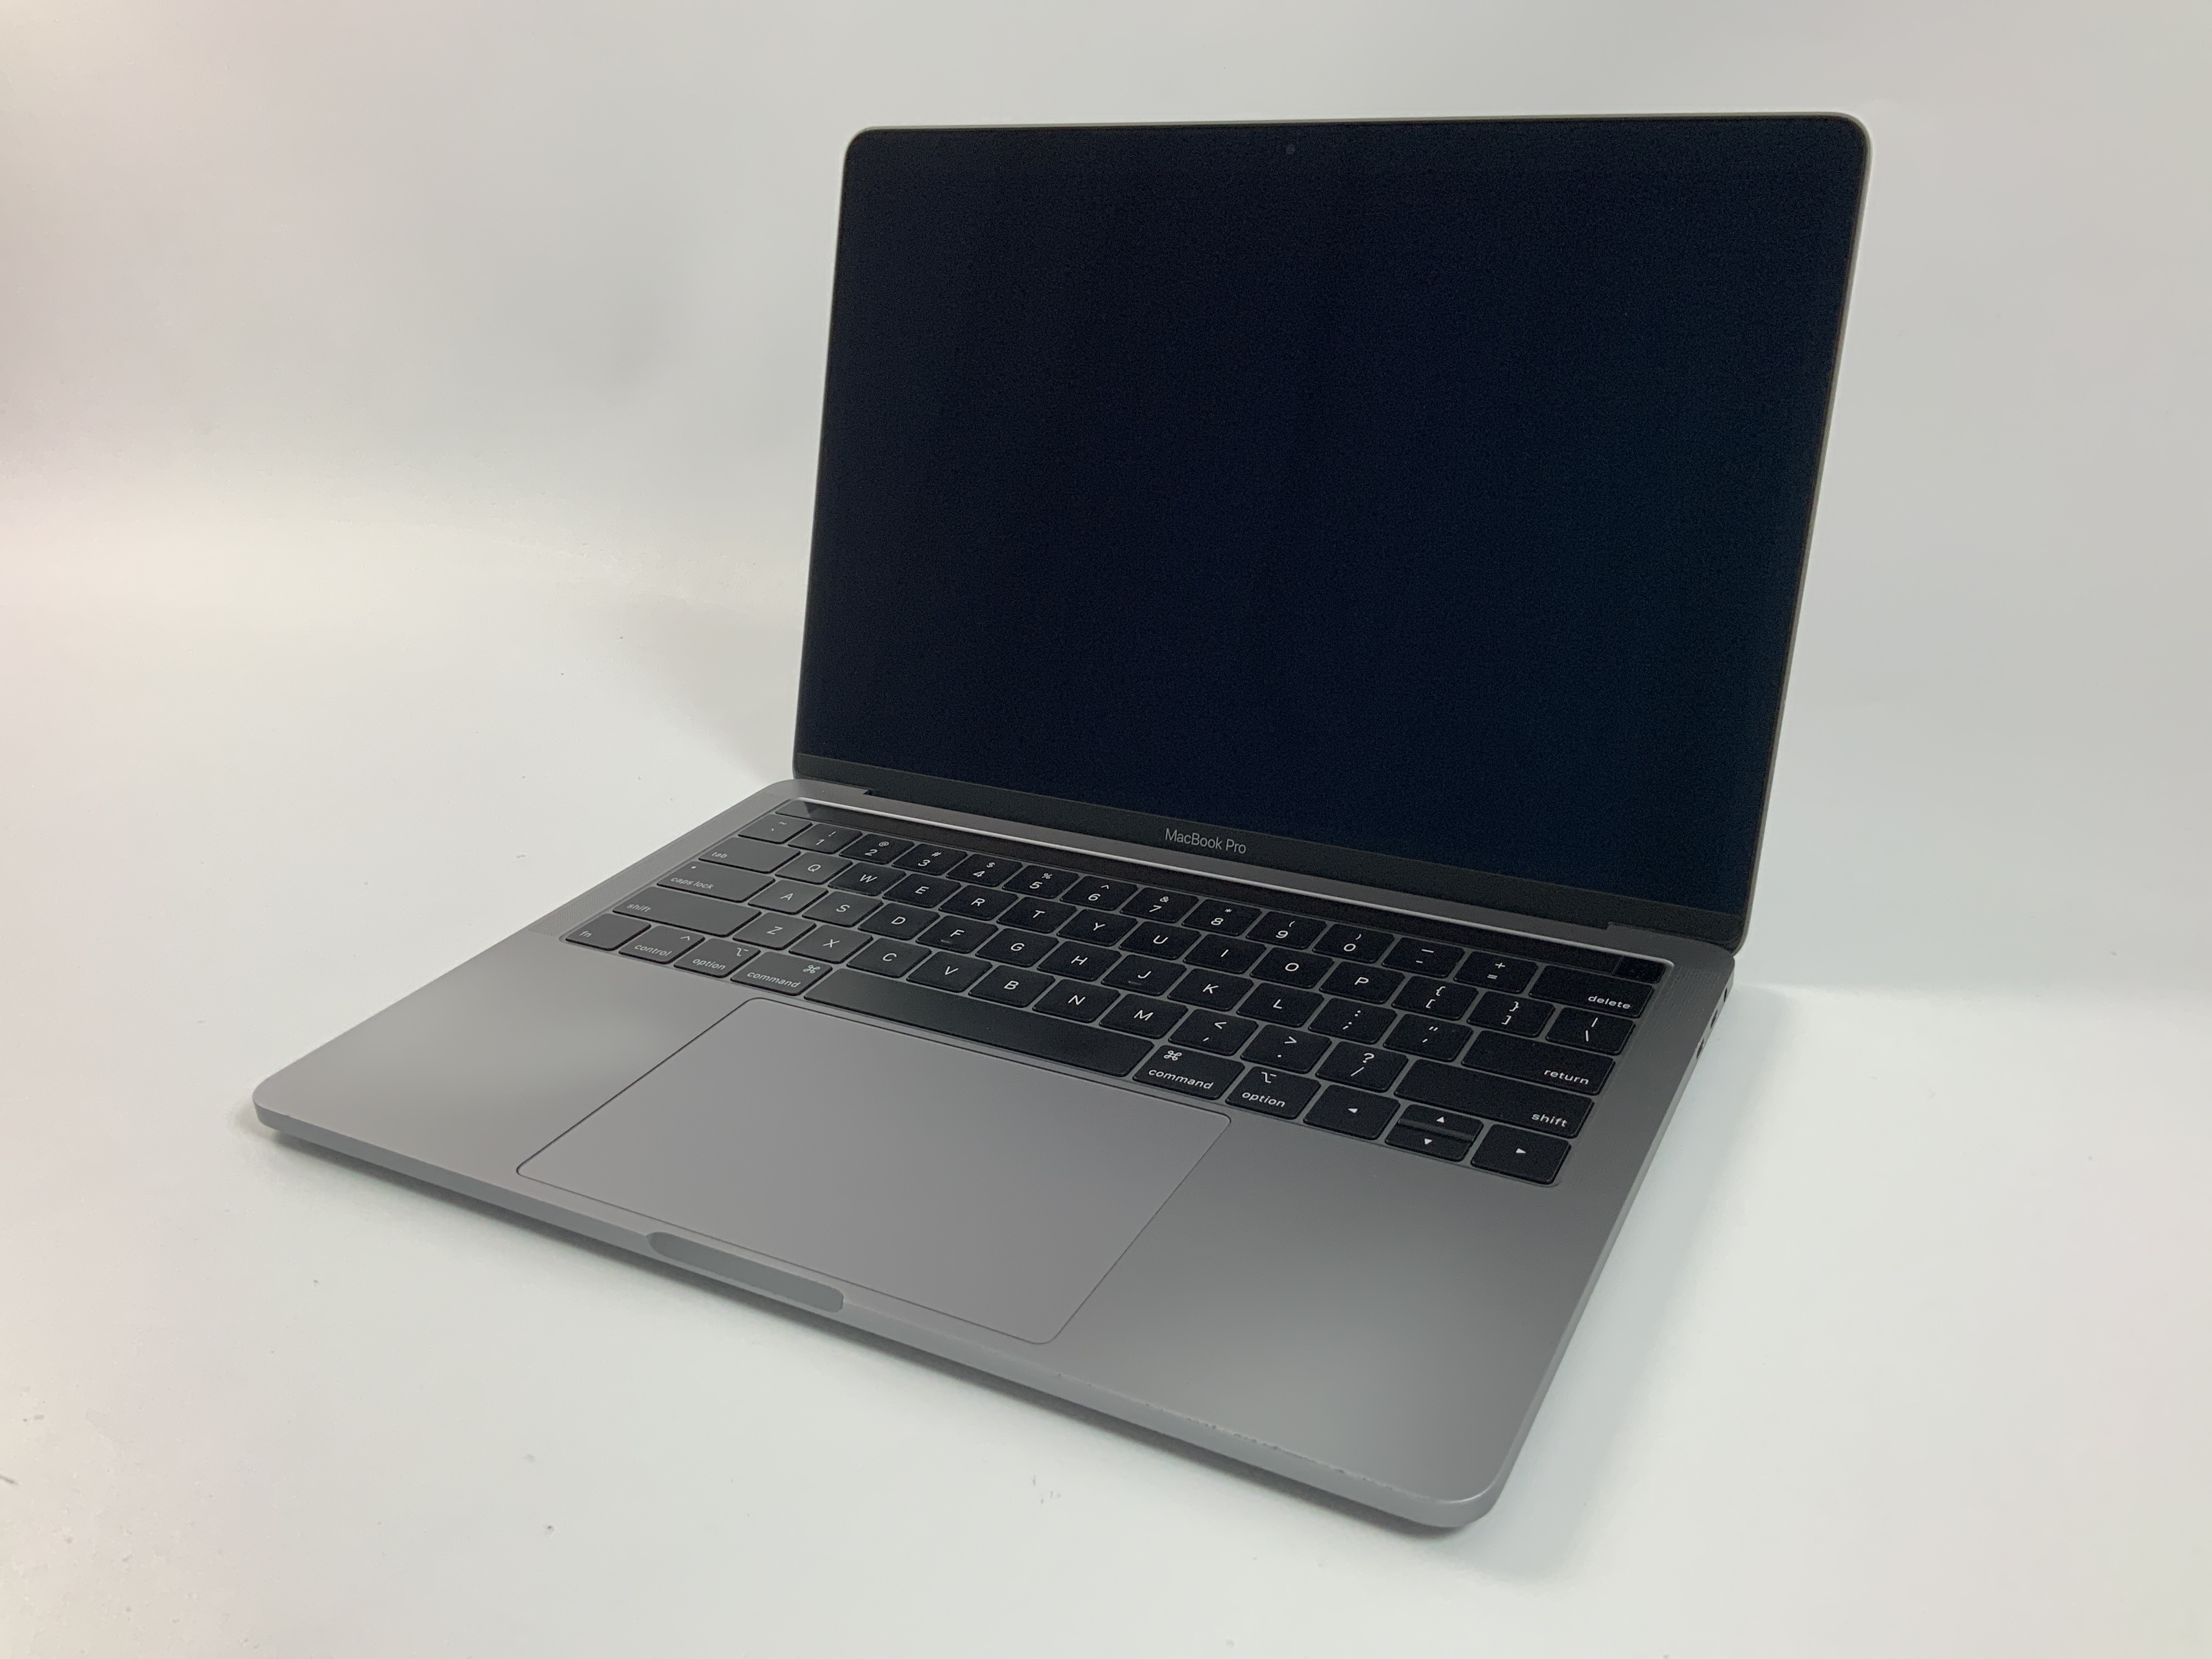 MacBook Pro 13" 4TBT Mid 2018 (Intel Quad-Core i7 2.7 GHz 8 GB RAM 1 TB SSD), Space Gray, Intel Quad-Core i7 2.7 GHz, 8 GB RAM, 1 TB SSD, Afbeelding 1